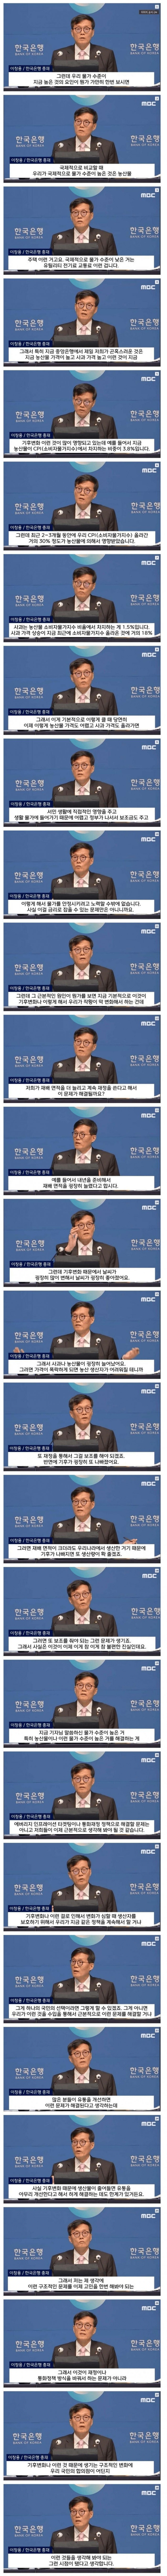 고물가에 대한 한국은행 총재의 발언